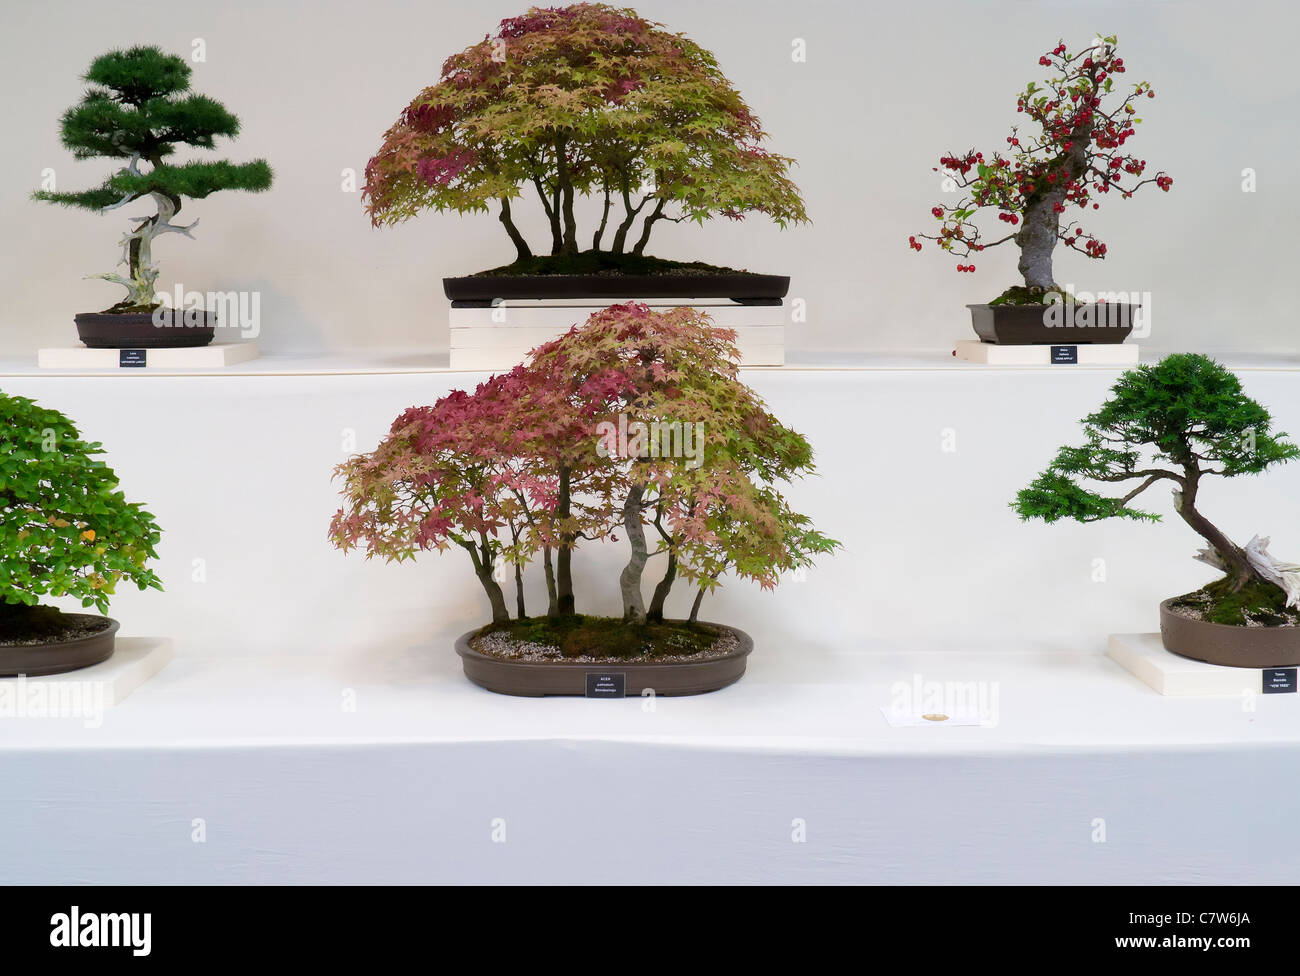 Malvern Herbst zeigen, England - Goldmedaille Bonsai display Stockfoto